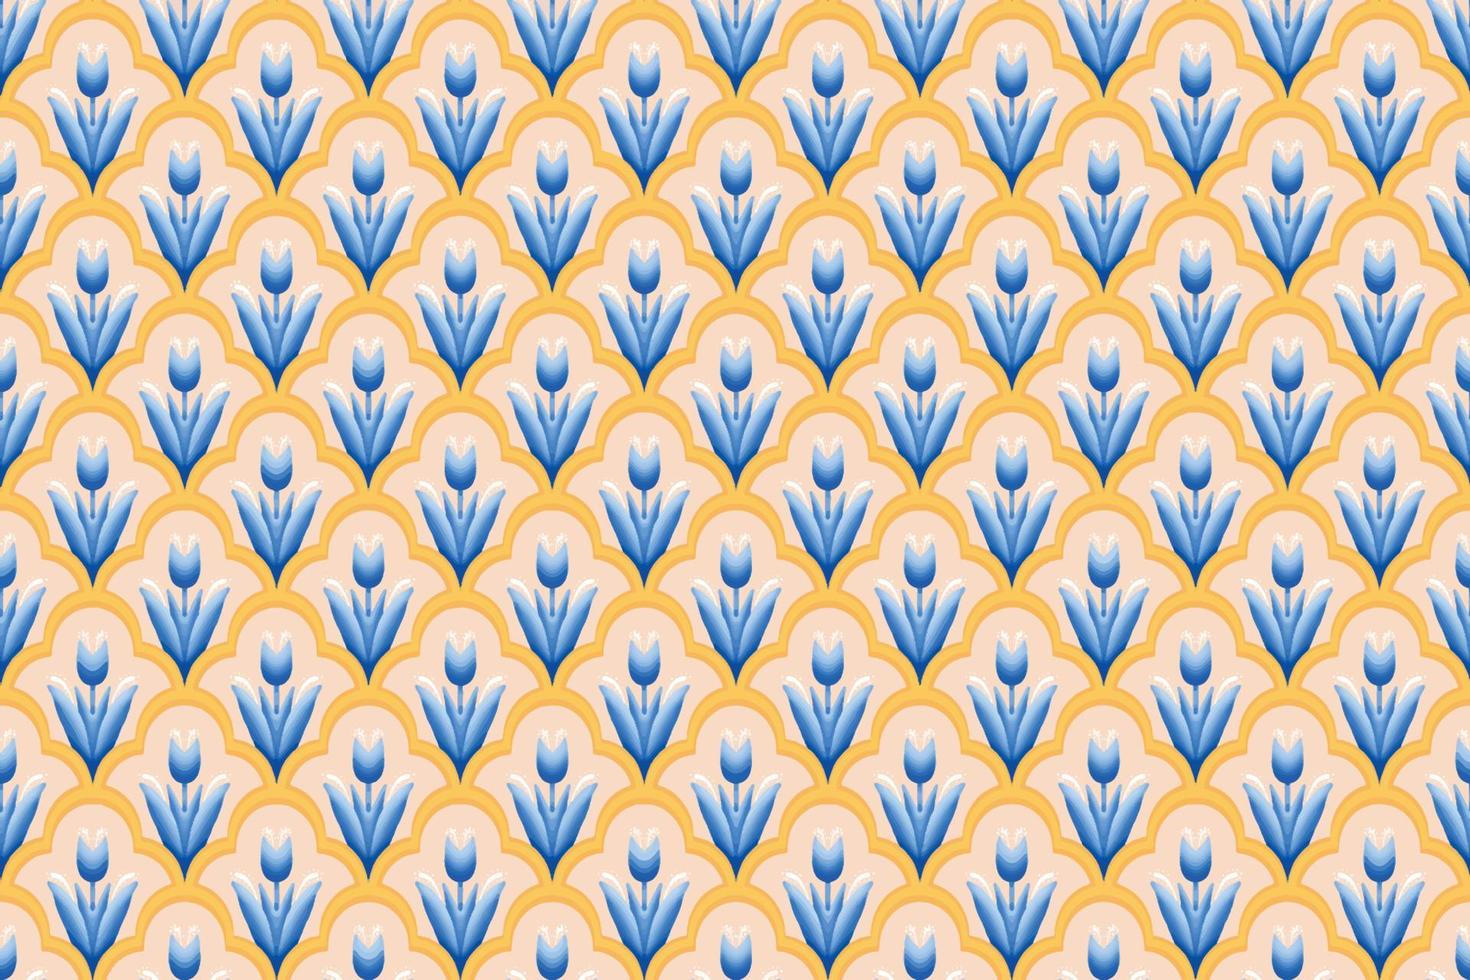 fleur bleue sur ivoire, blanc, jaune géométrique ethnique motif oriental design traditionnel pour le fond tapis papier peint vêtements emballage batik tissu illustration vectorielle style de broderie vecteur